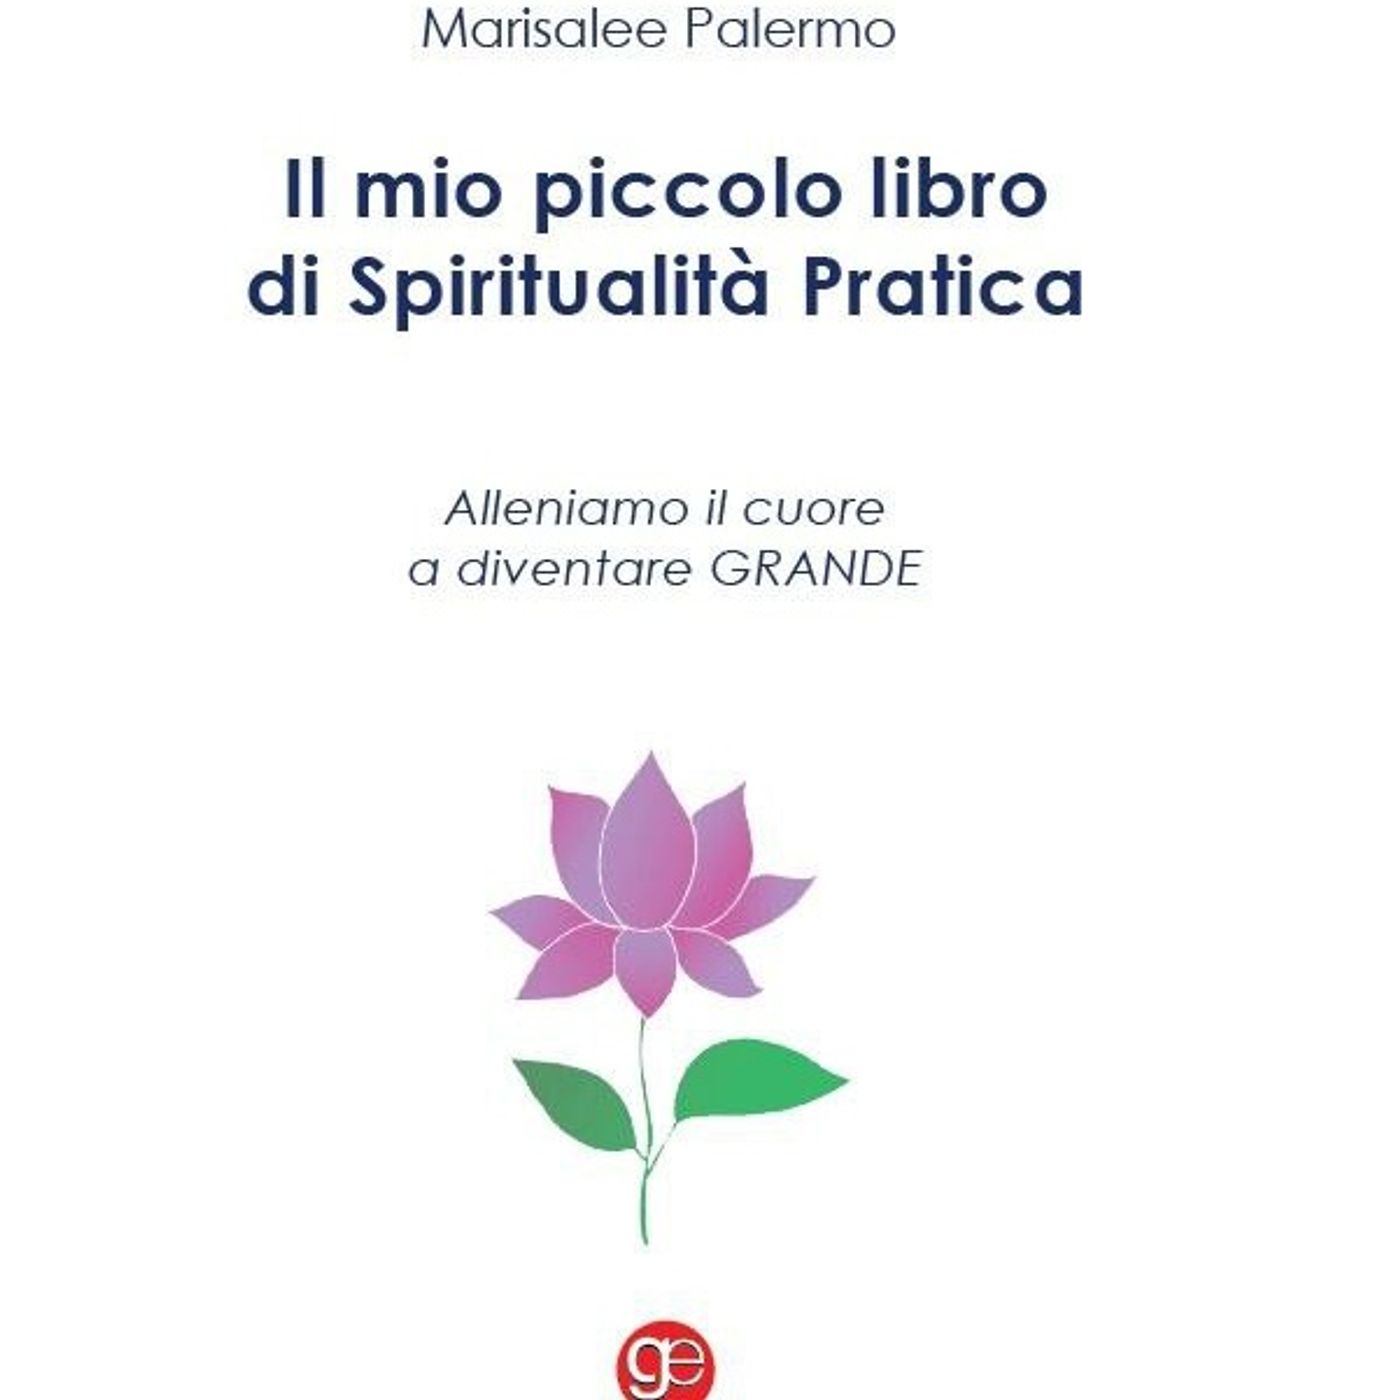 Il mio piccolo libro di spiritualità pratica di Marisa Lee Palermo